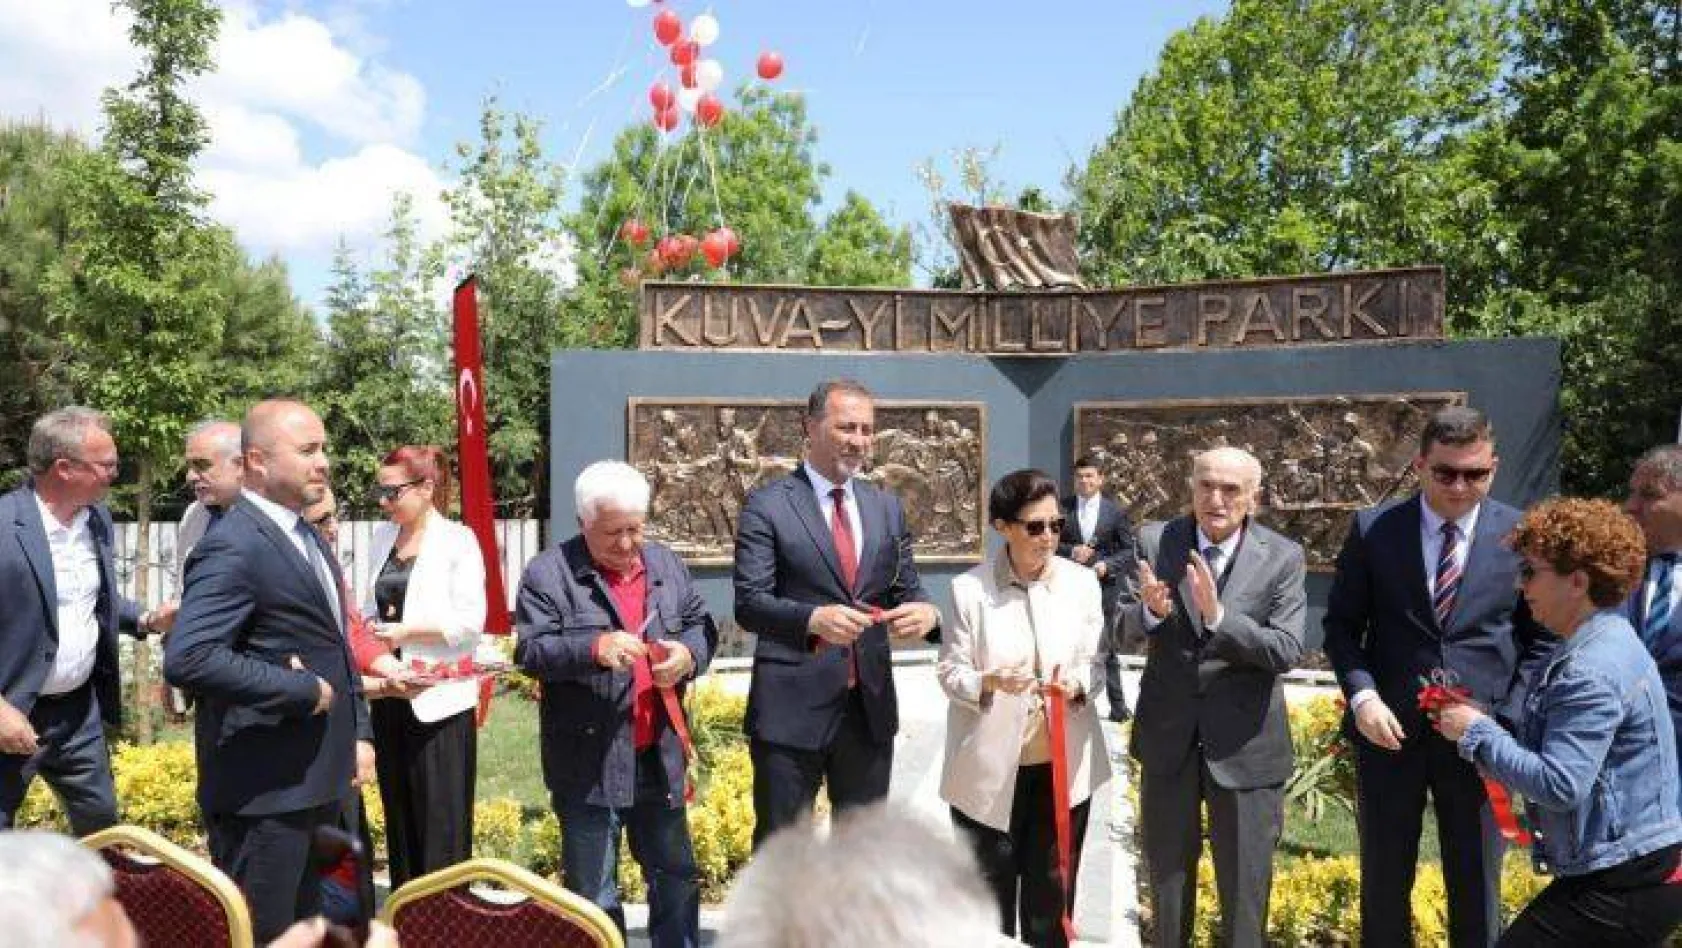 Kuva-yi Milliye Parkı açıldı